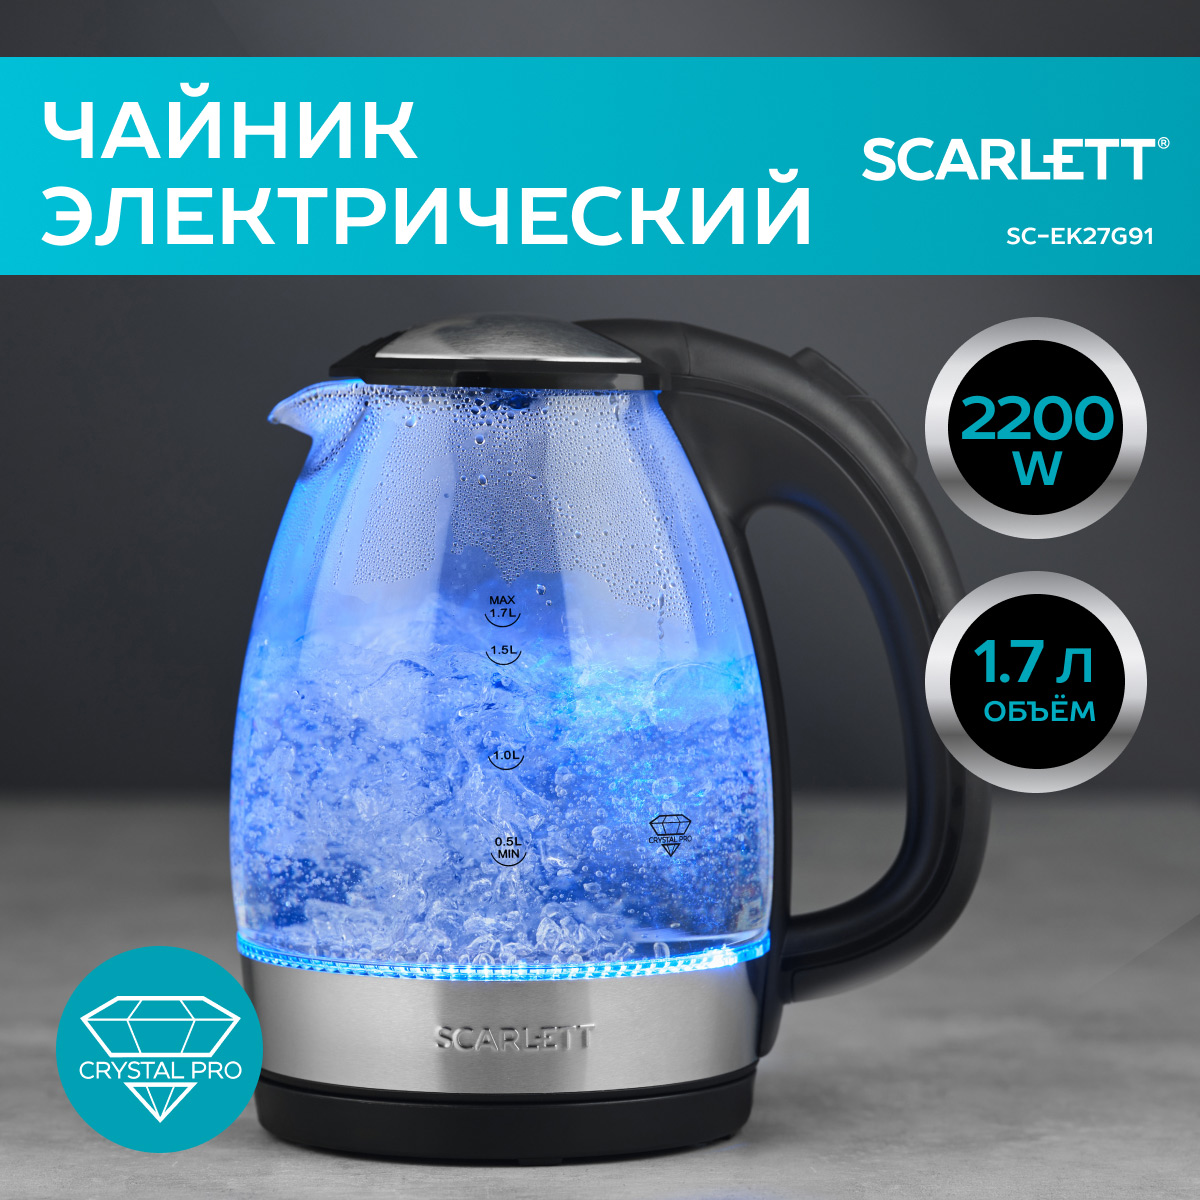 Чайник электрический Scarlett SC-EK27G91 1.7 л серебристый, прозрачный, черный любовь в эпоху перемен